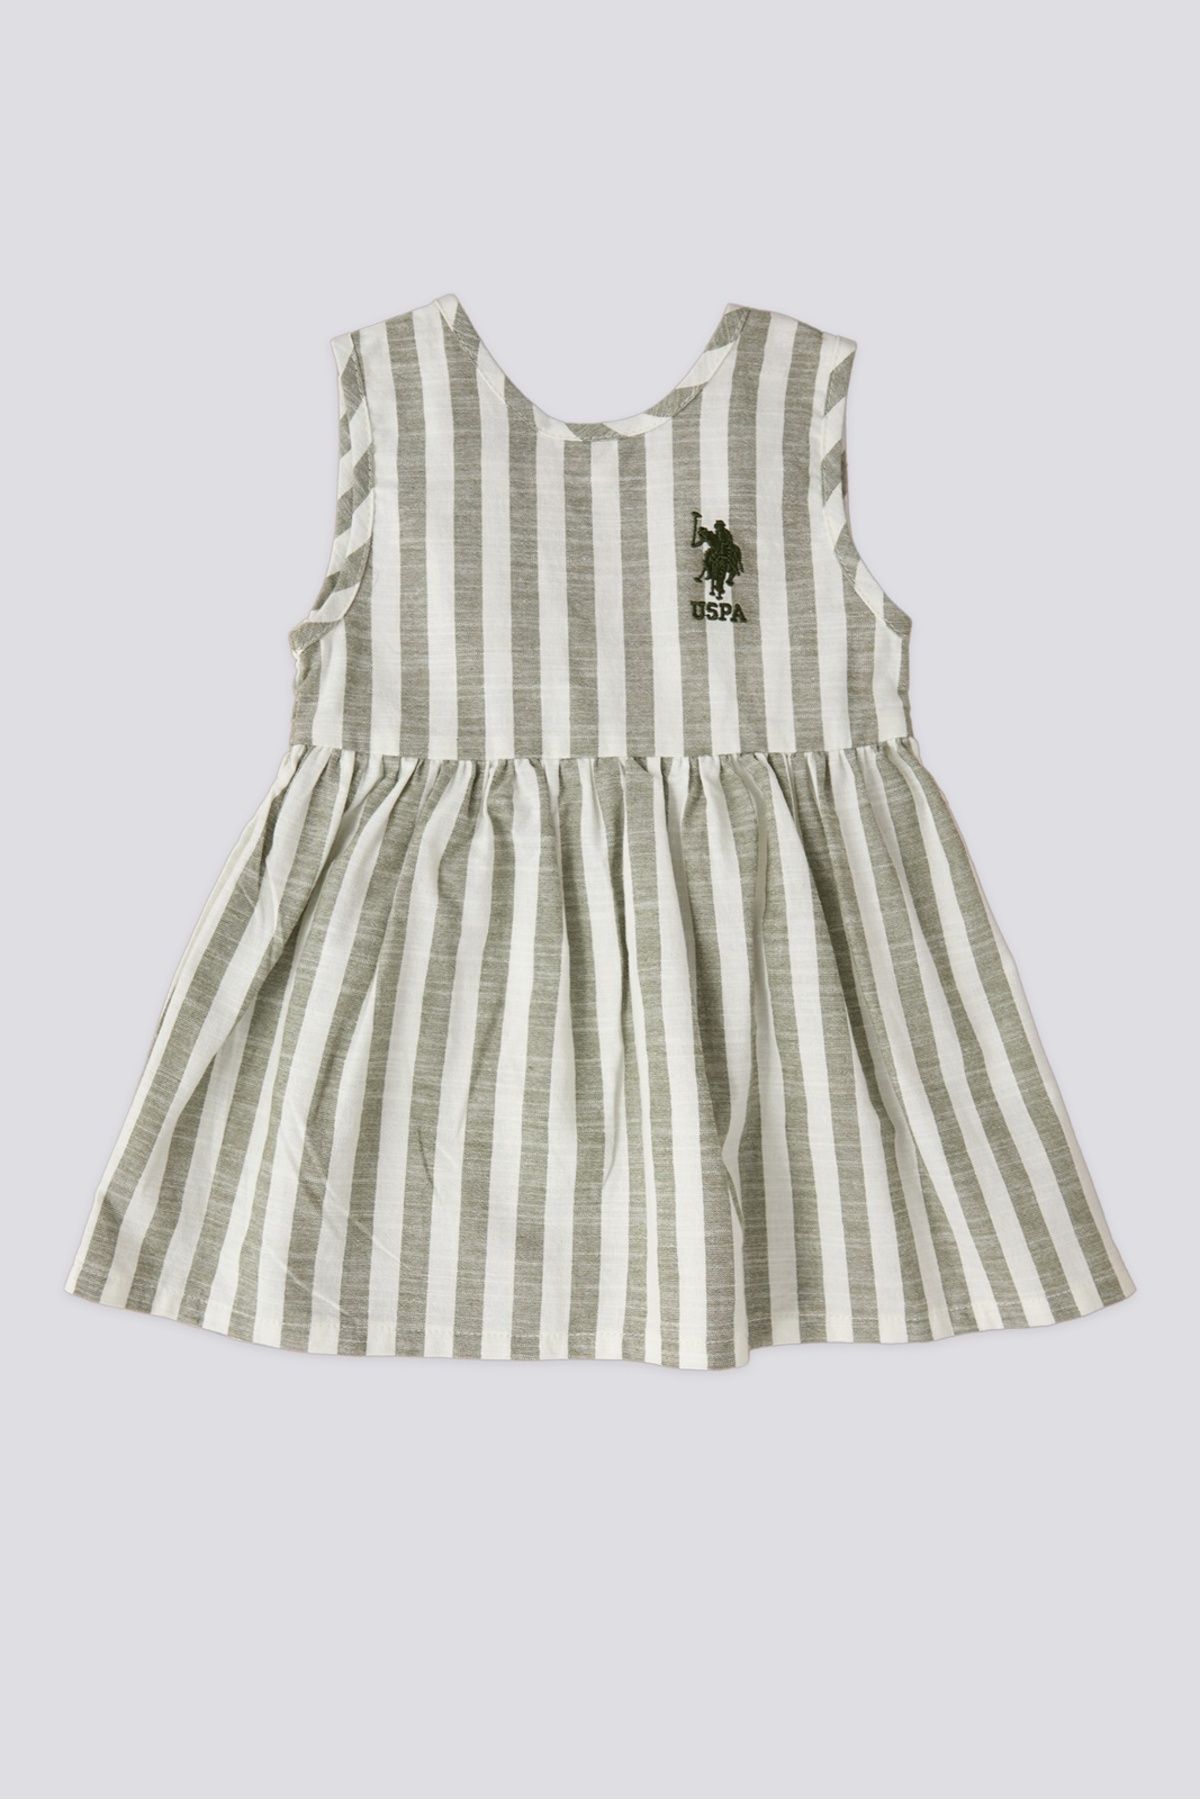 U.S. Polo Assn. US. Polo ASSN. Kız Bebek Elbise